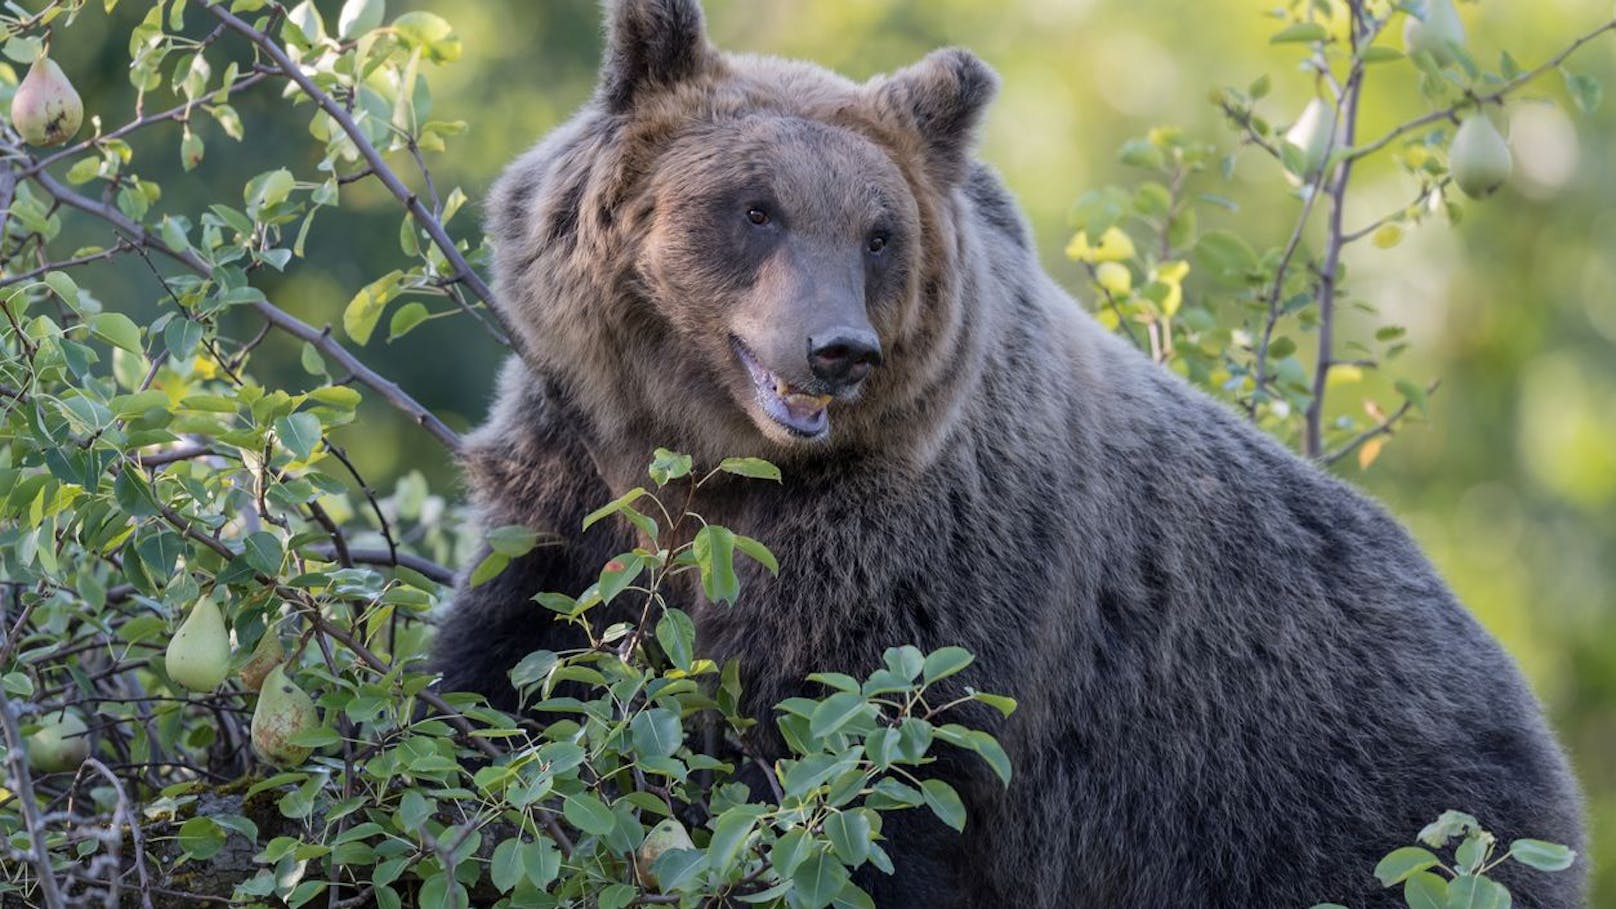 Bär attackierte Jogger – jetzt soll das Tier sterben